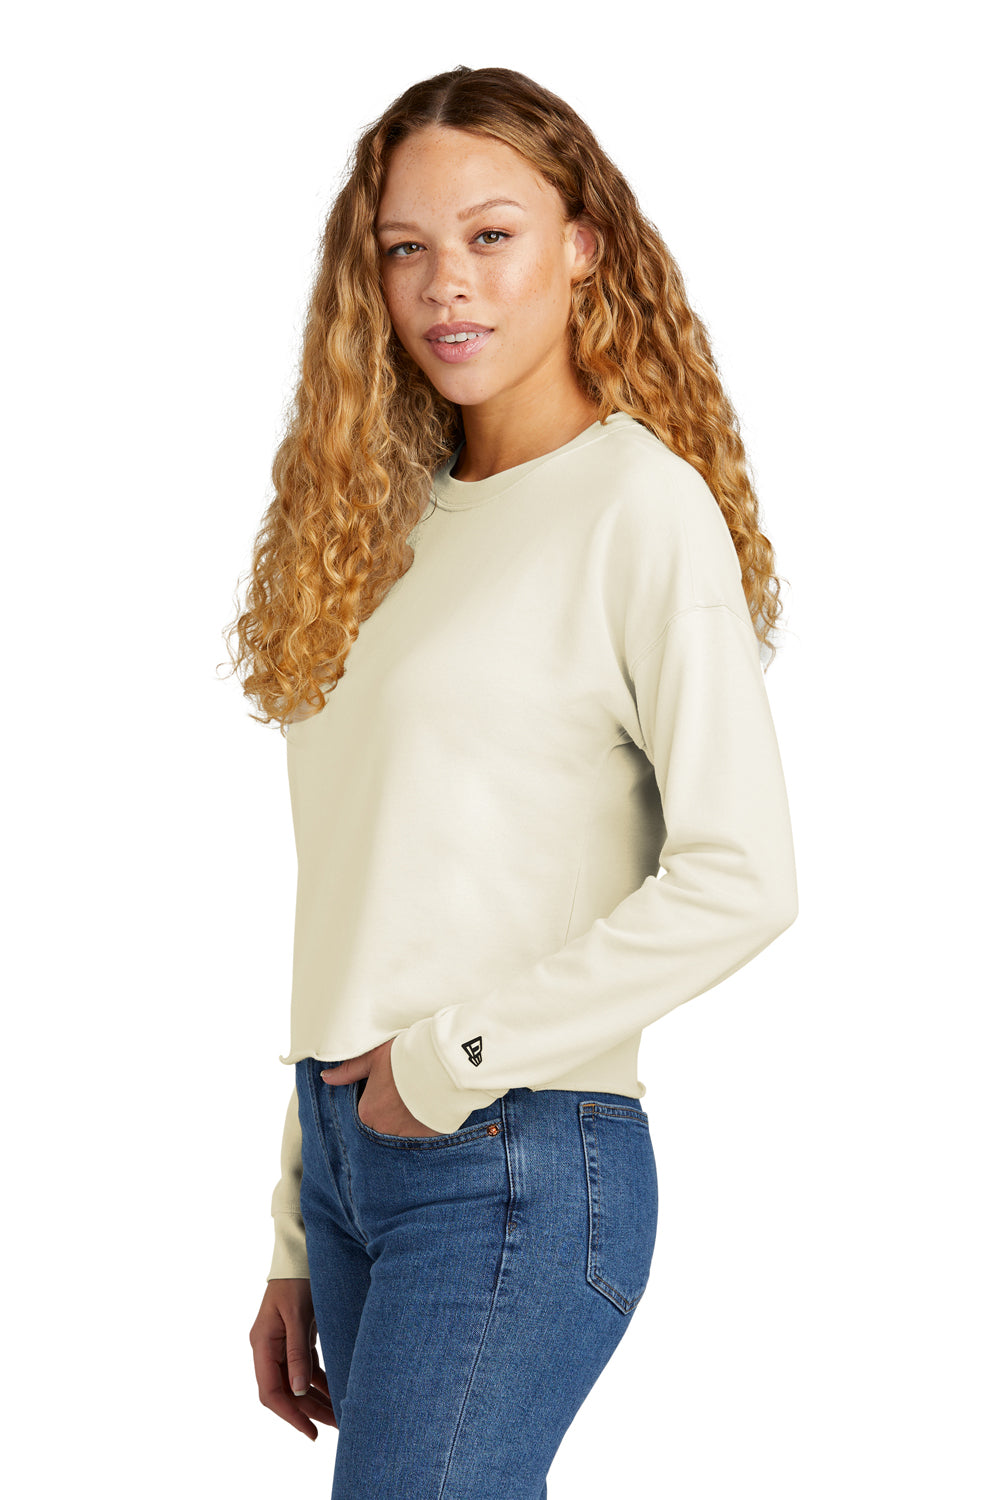 New Era Womens Fleece Crop Crewneck Sweatshirt Soft Beige Side